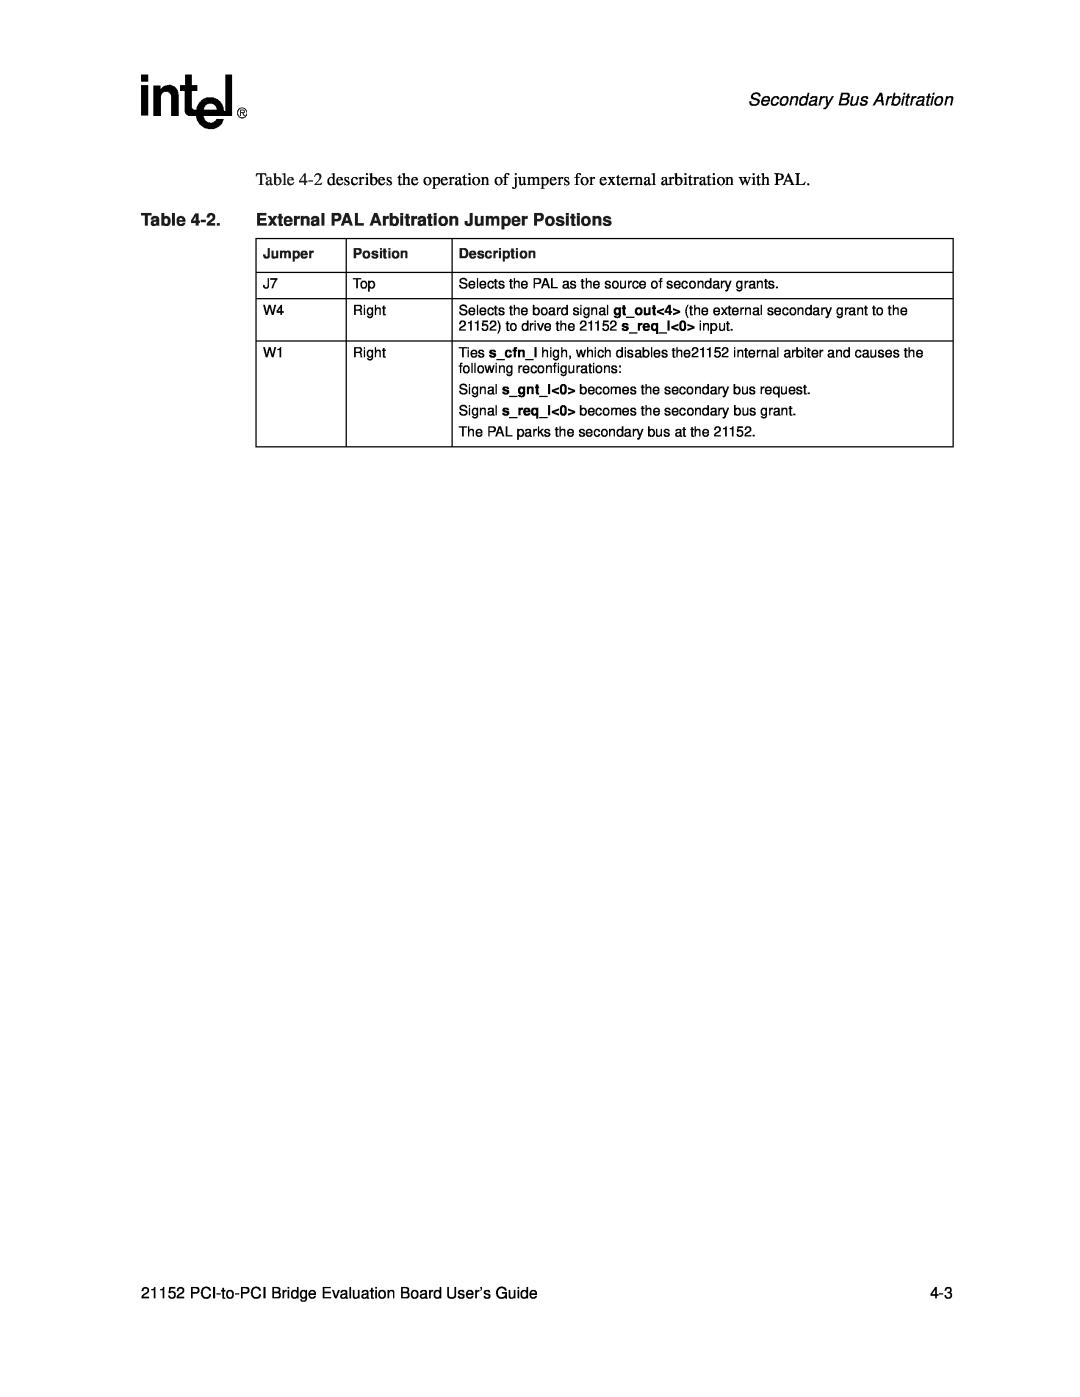 Intel 21152 manual External PAL Arbitration Jumper Positions, Secondary Bus Arbitration, Description 